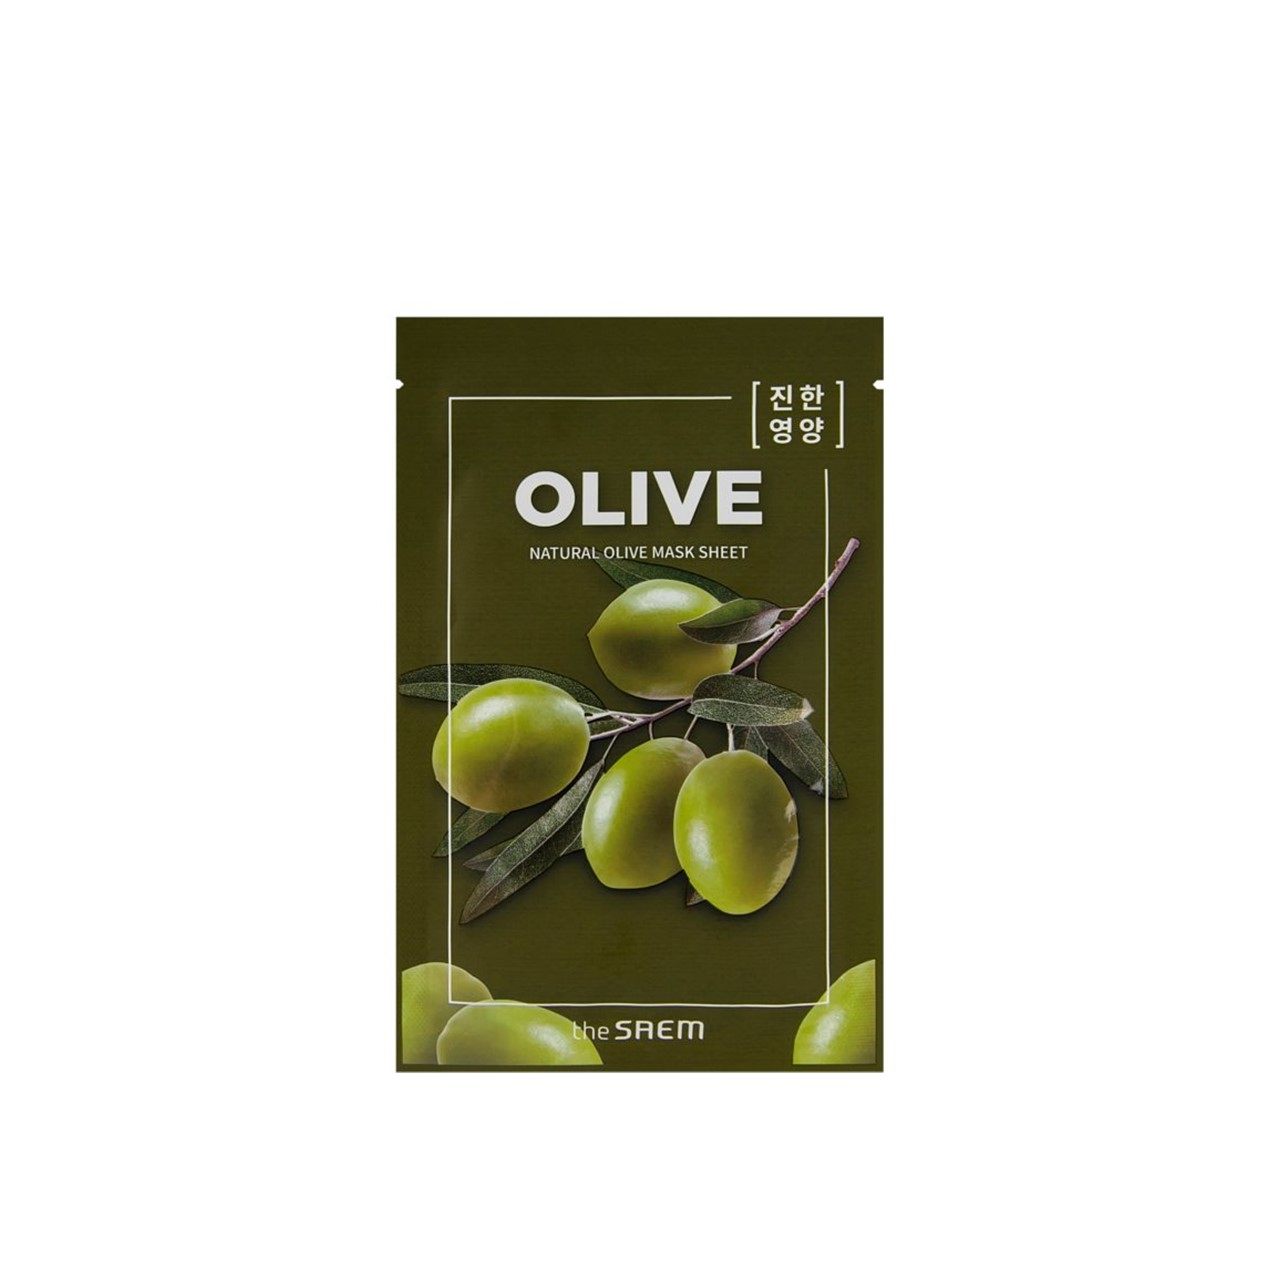 The Saem Natural Olive Mask Sheet 21ml (0.71fl oz)